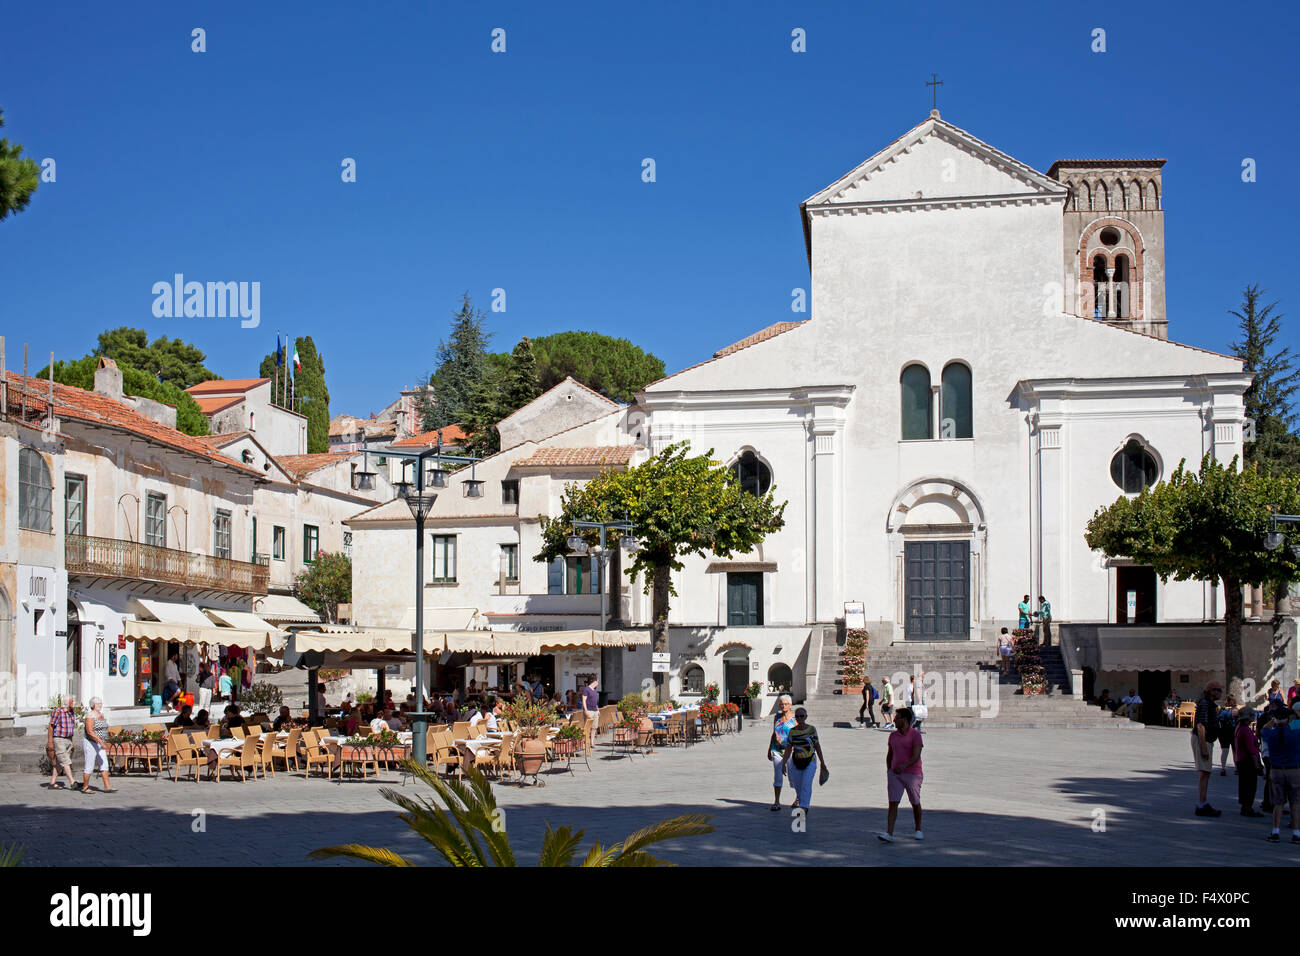 Duomo e piazza principale, Ravello, Amalfi, Italia, con bar e turisti Foto Stock